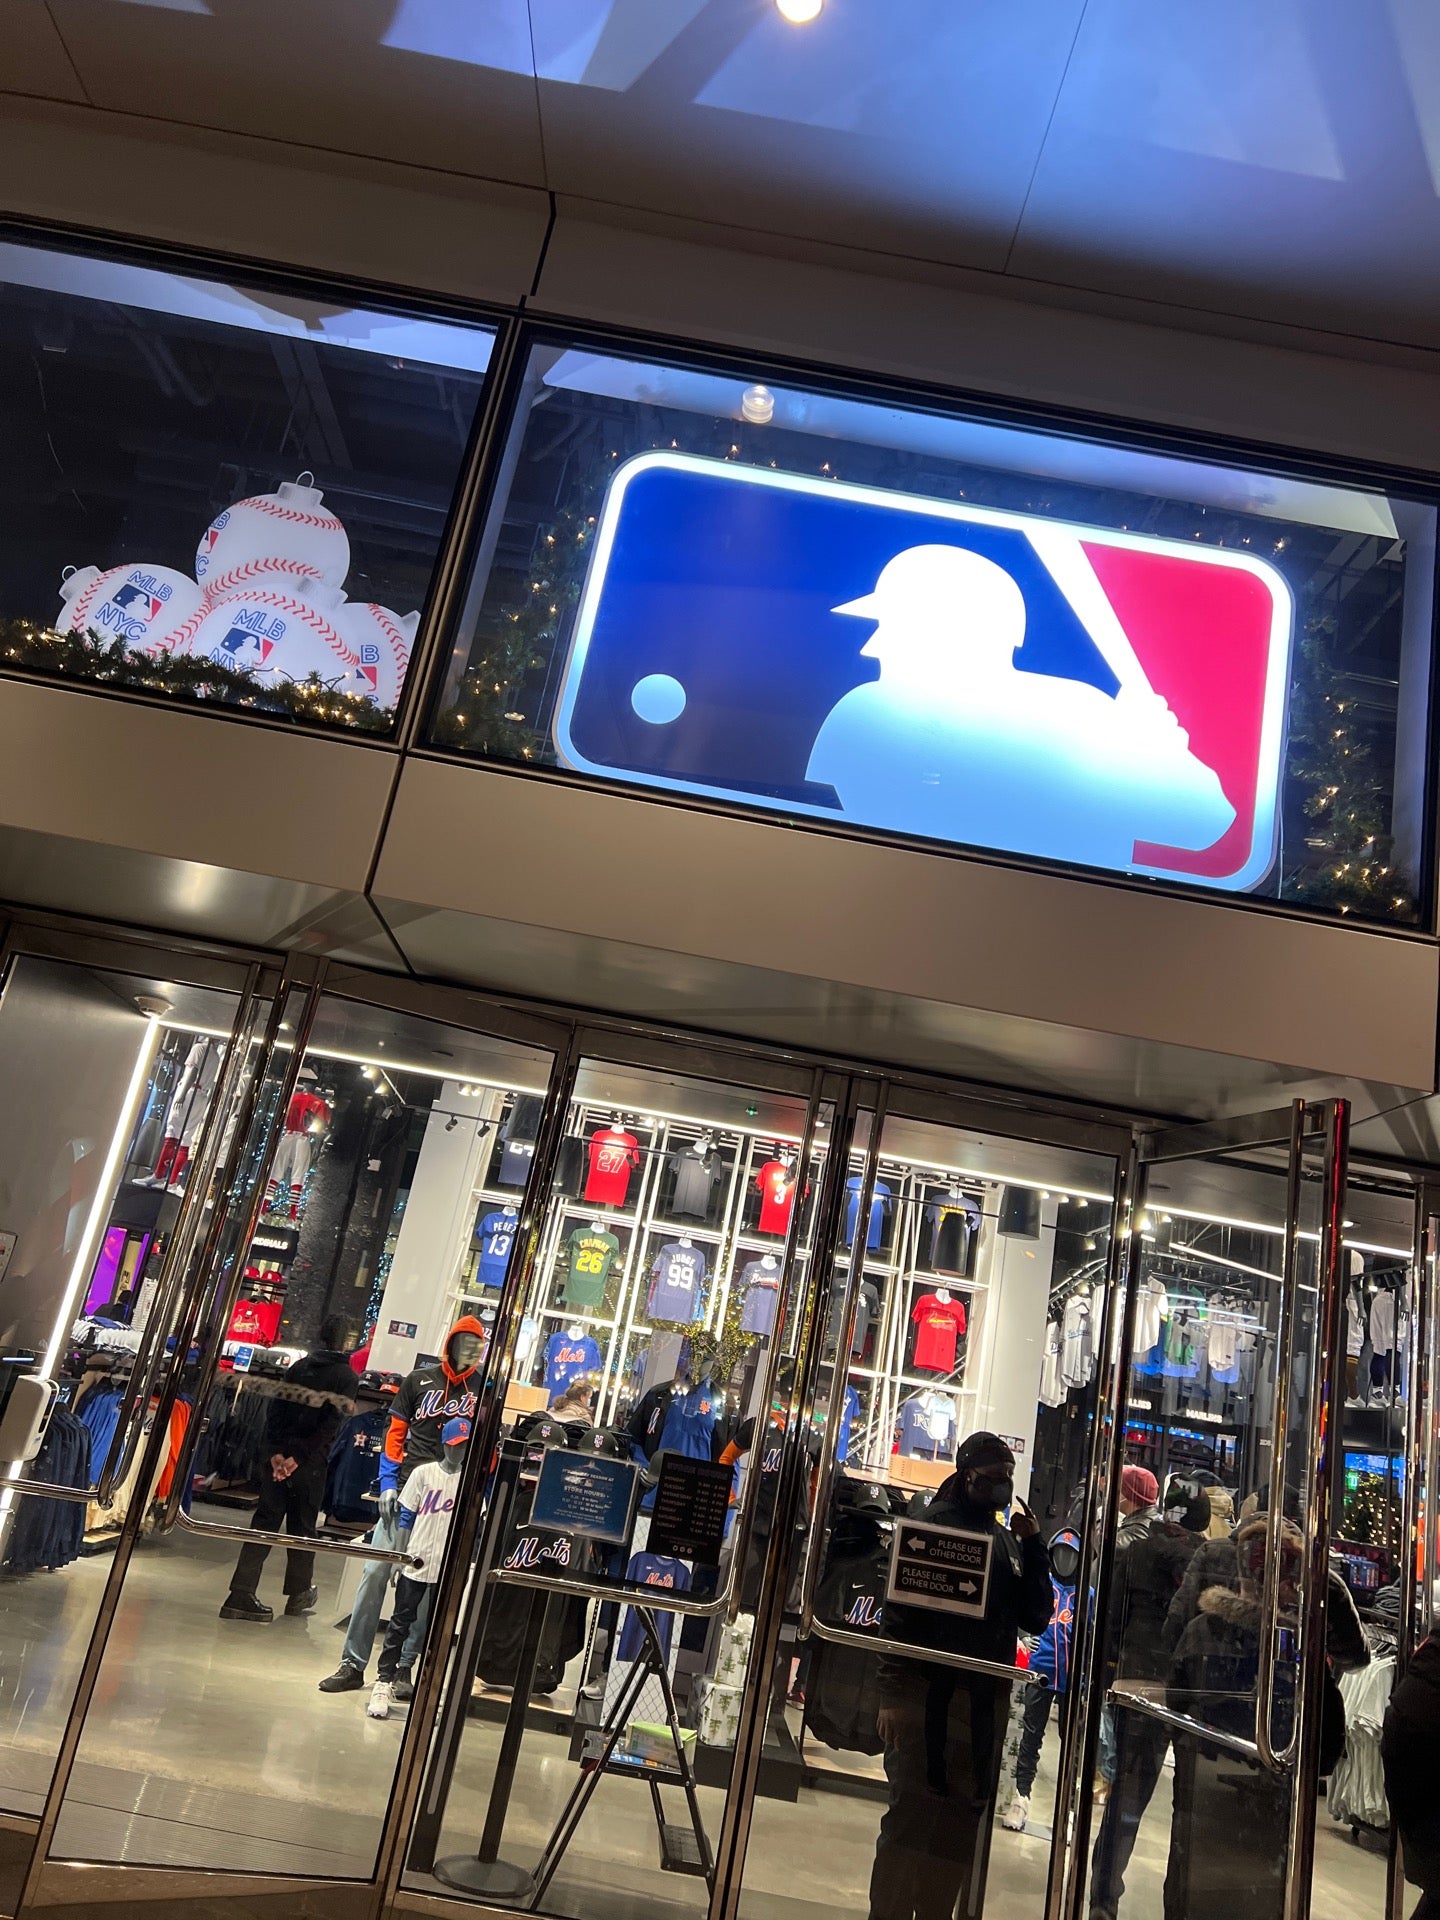 MLB Store  New York NY